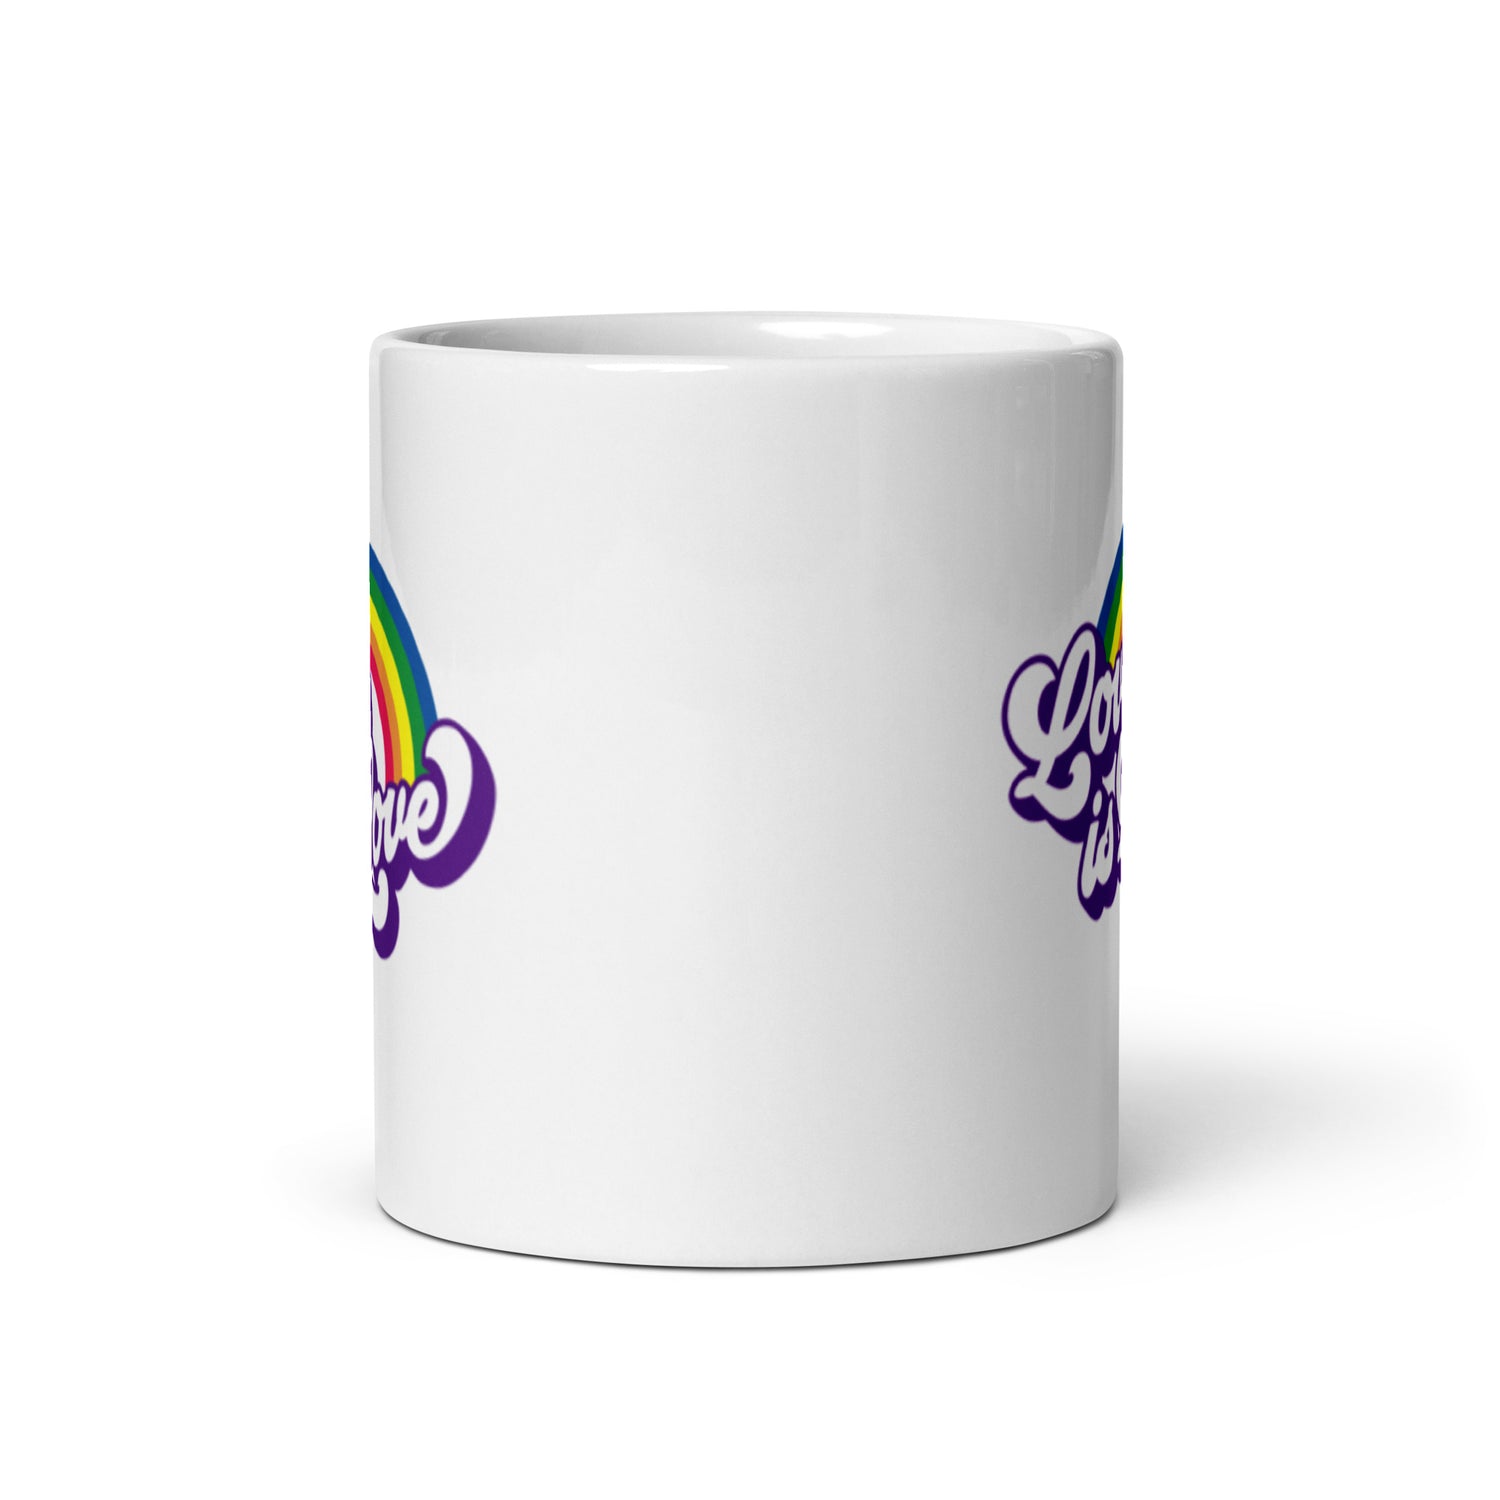 Love is Love Gay Pride Coffee Mug - gay pride apparel